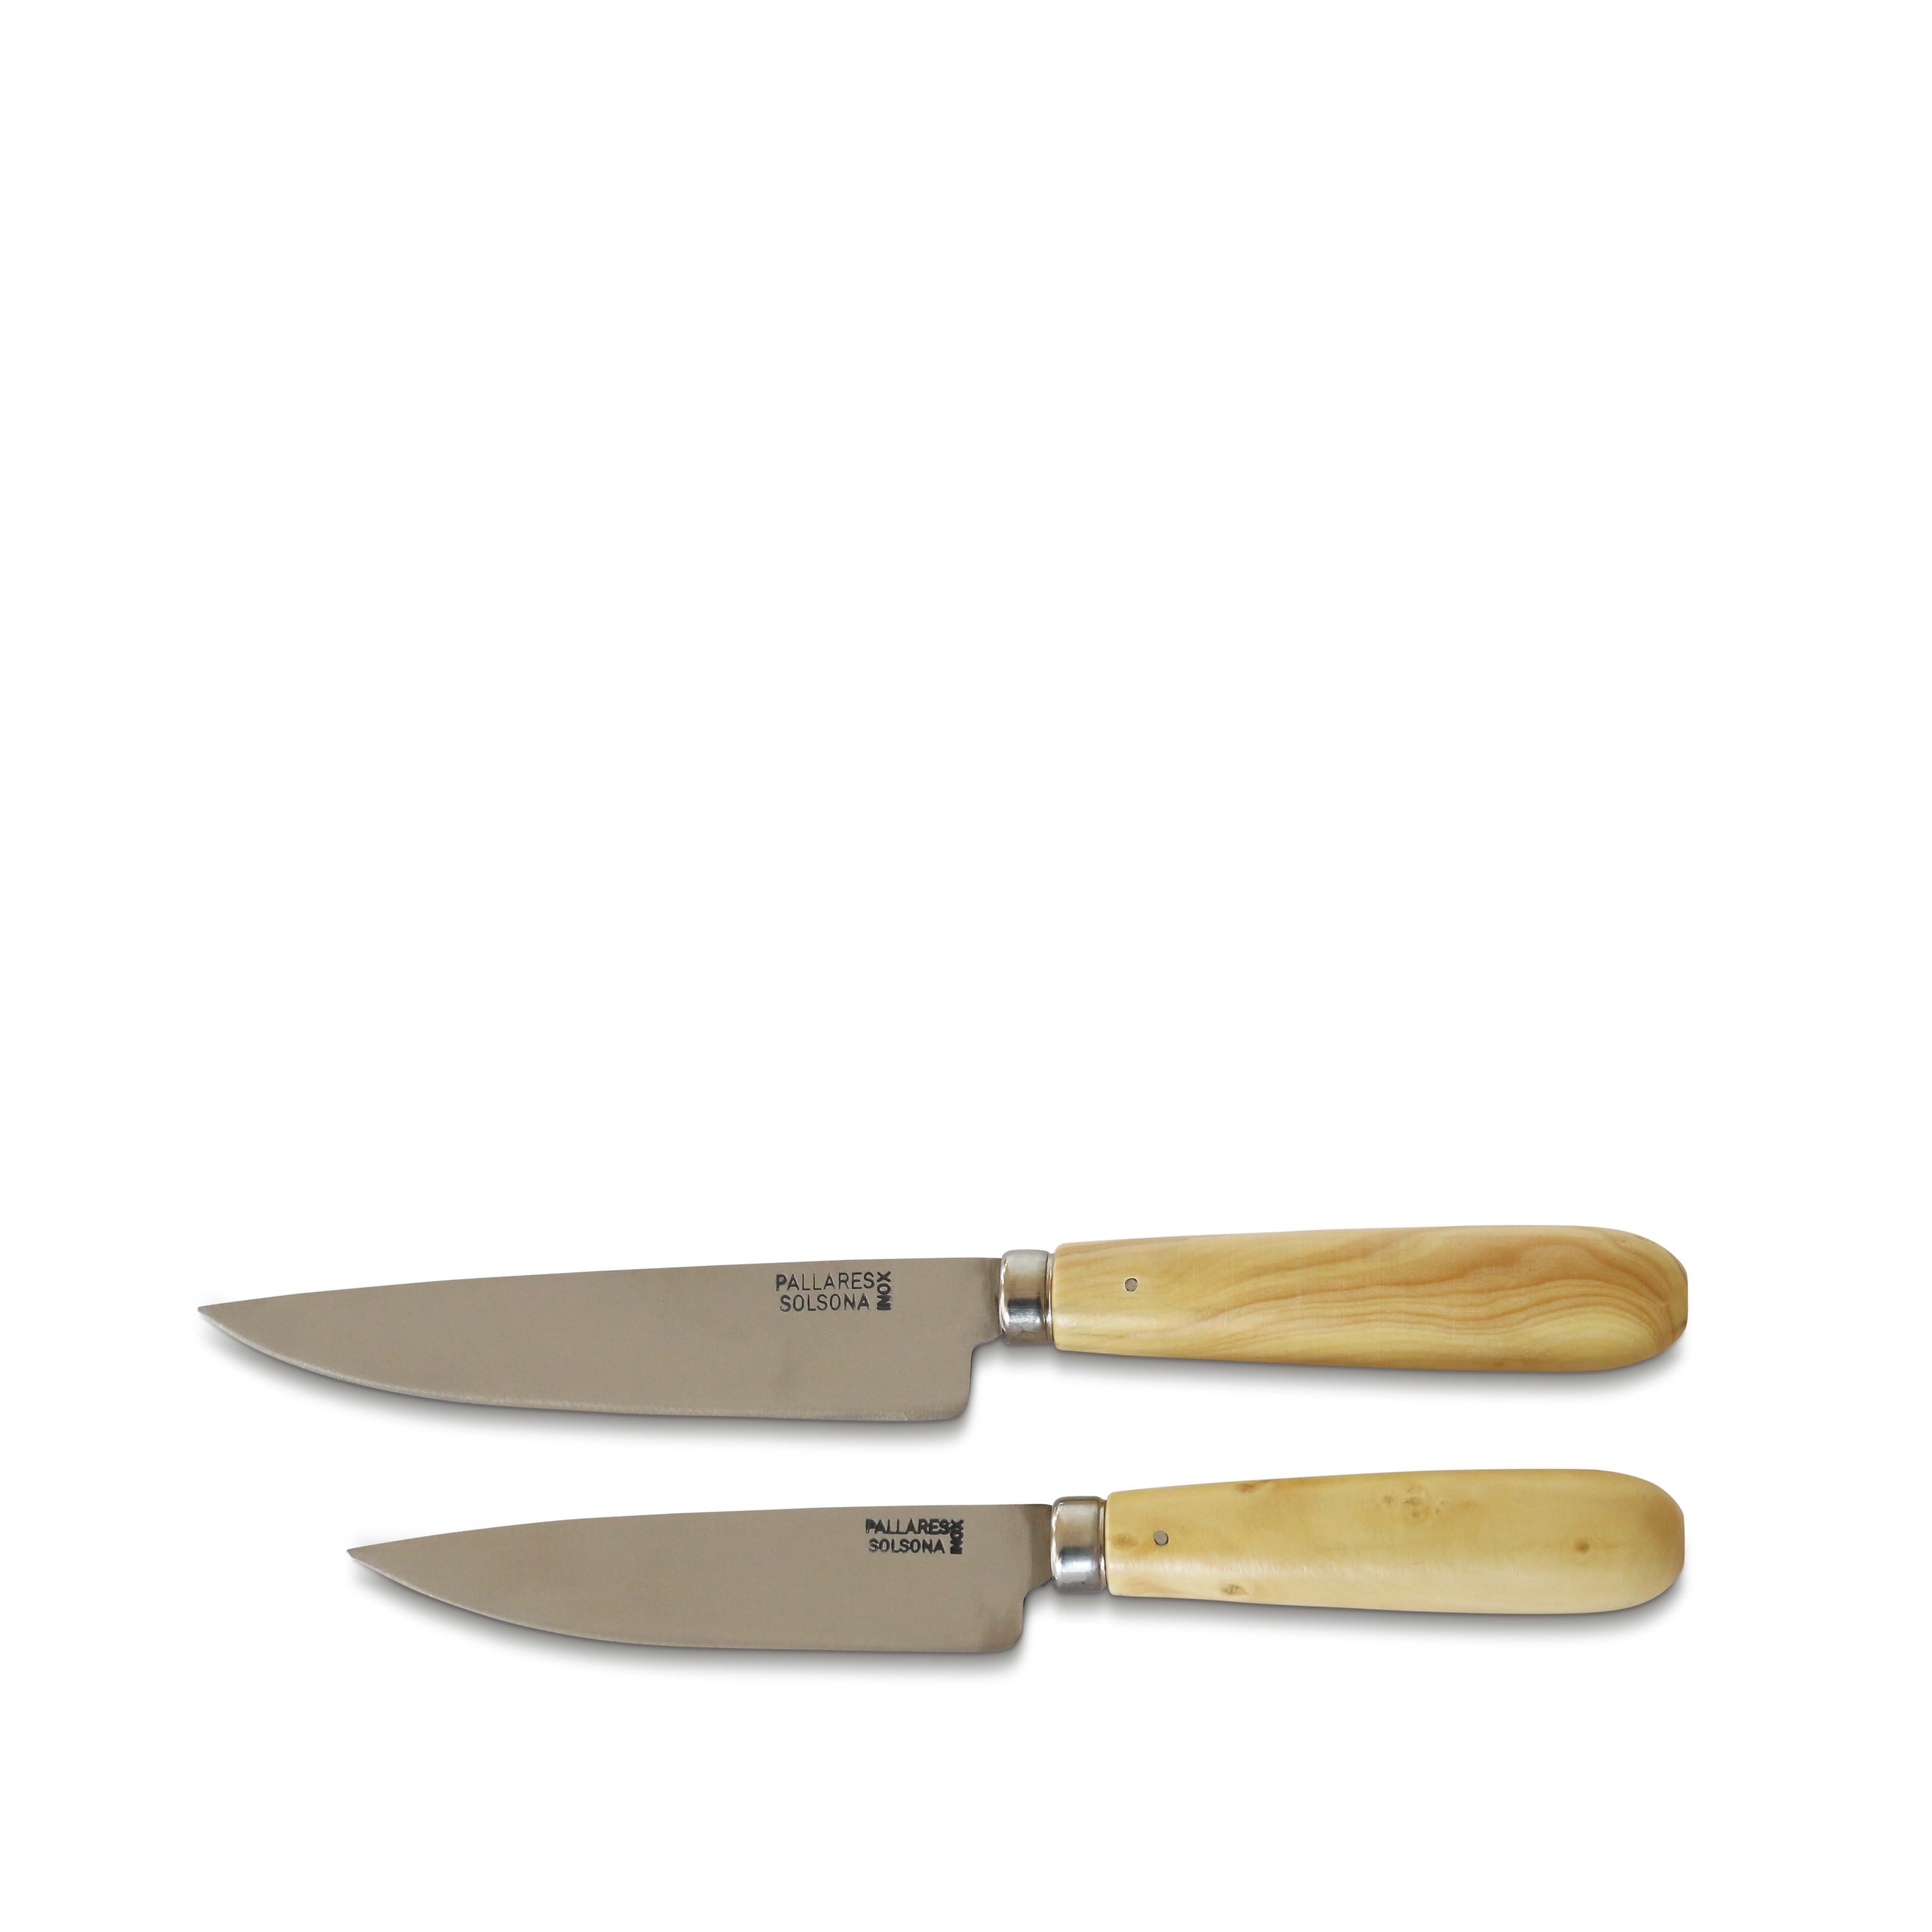 Pallarès kitchen knife